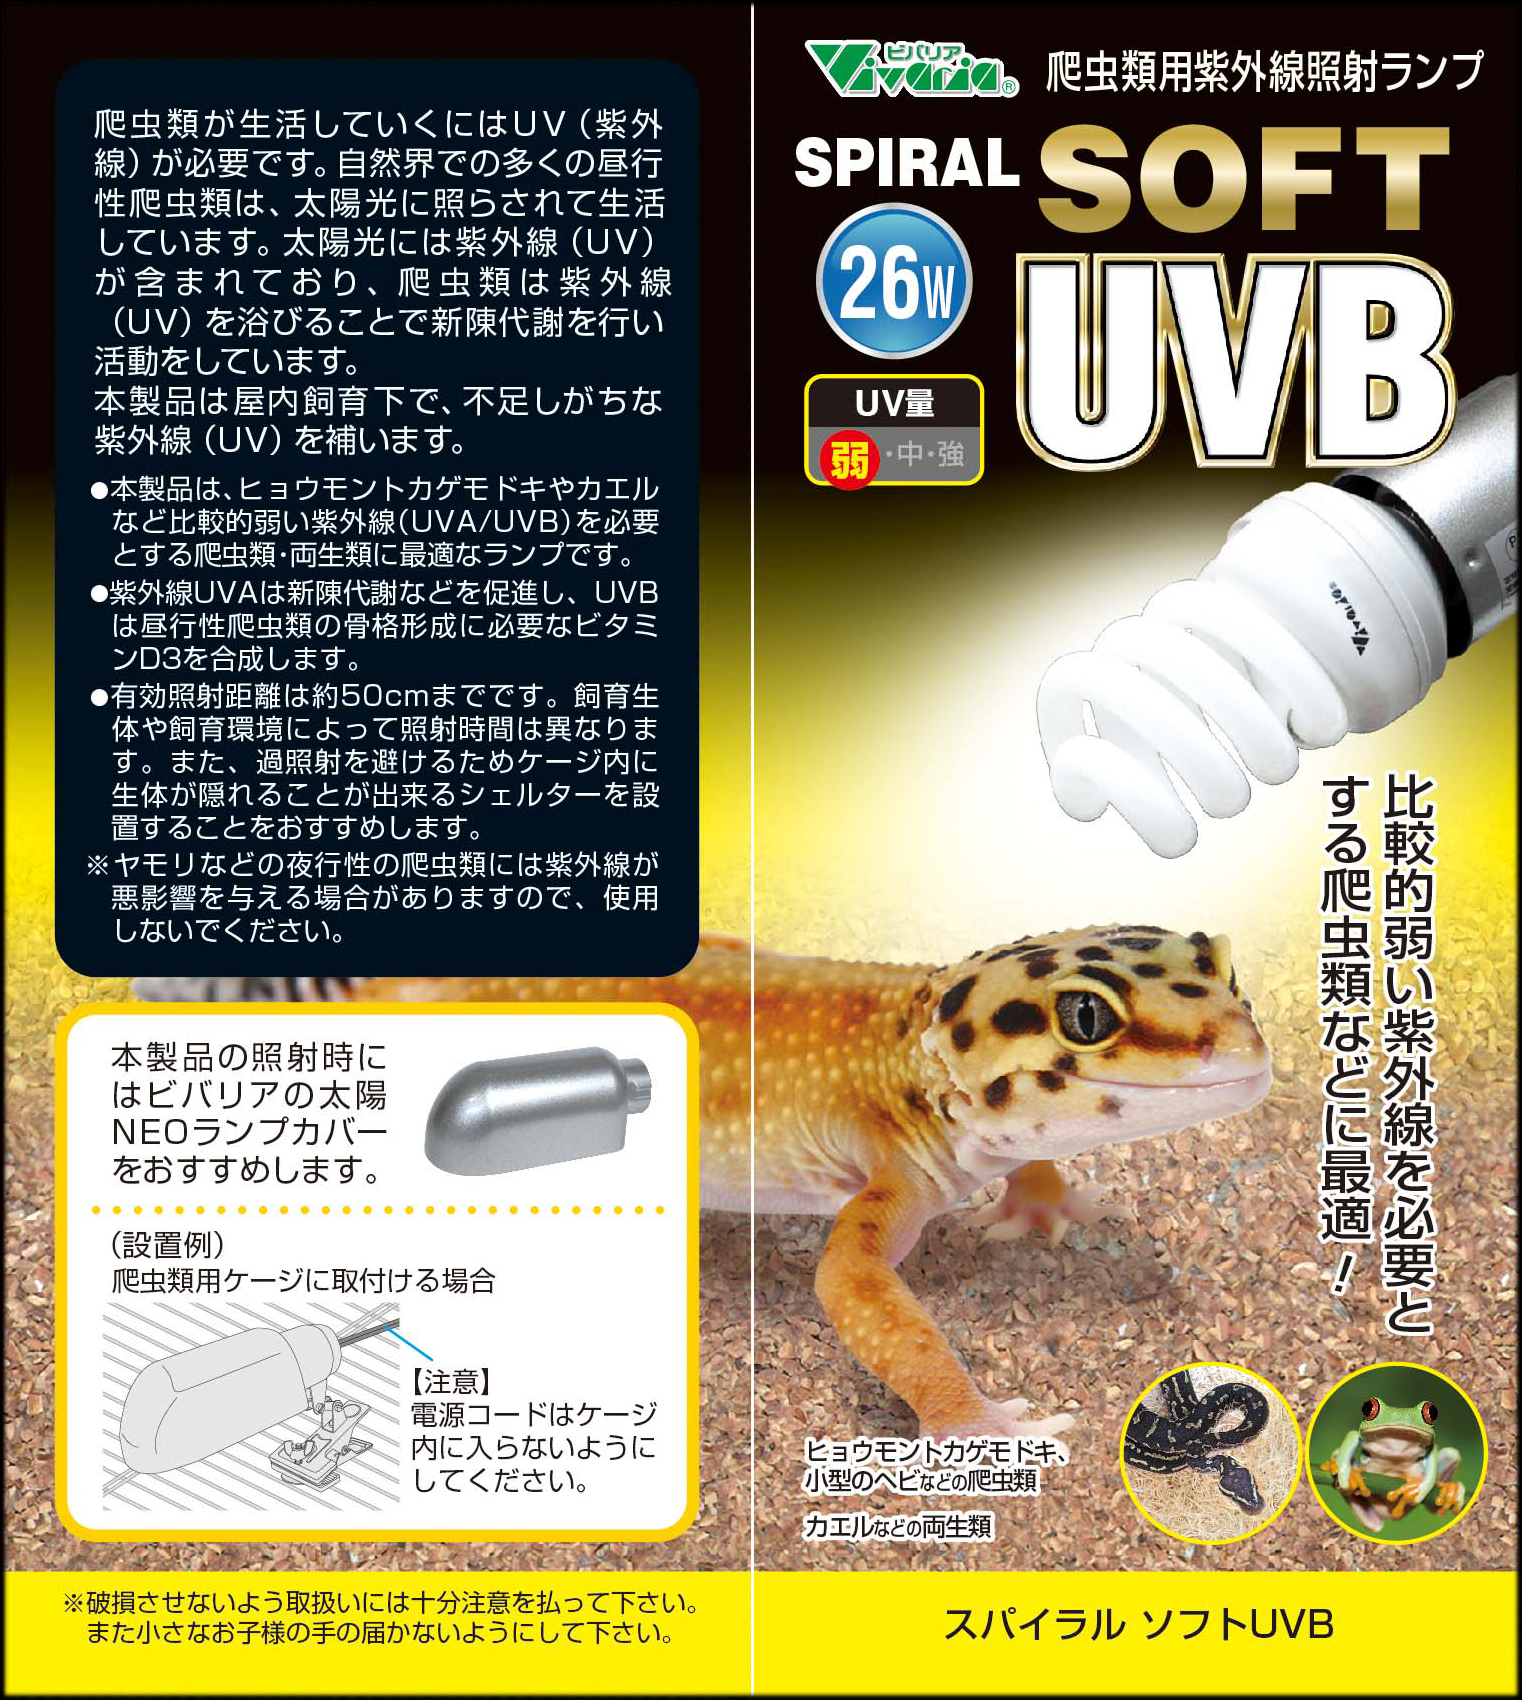 スパイラルソフト UVB 26W ビバリア パッケージ表